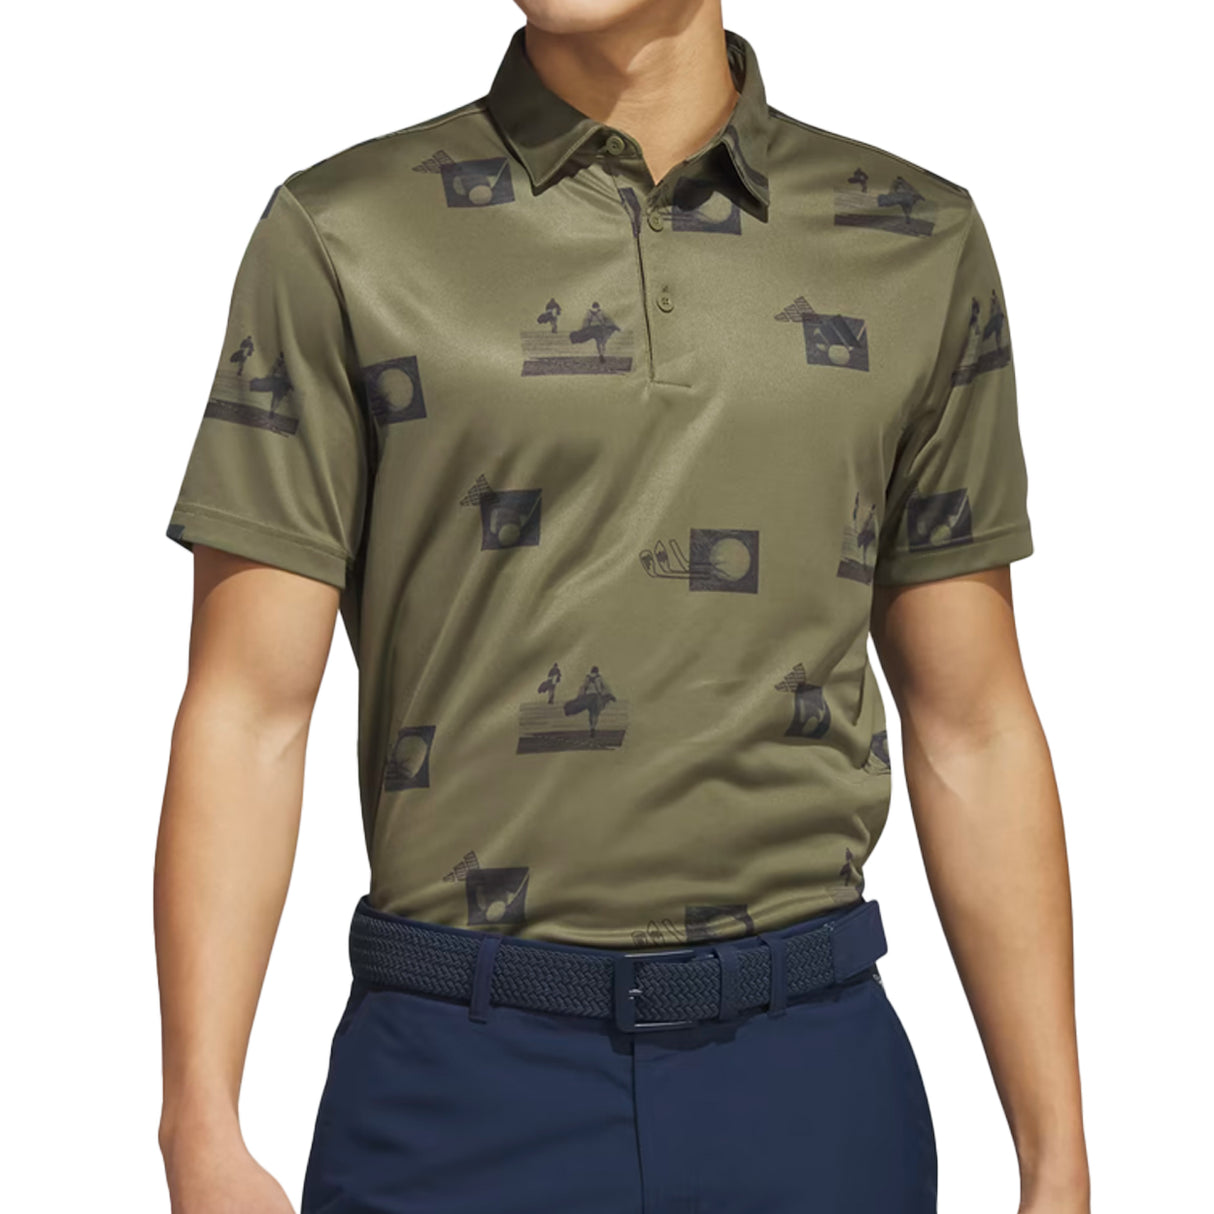 Adidas Golf Men's Allover-Print Polo Shirt